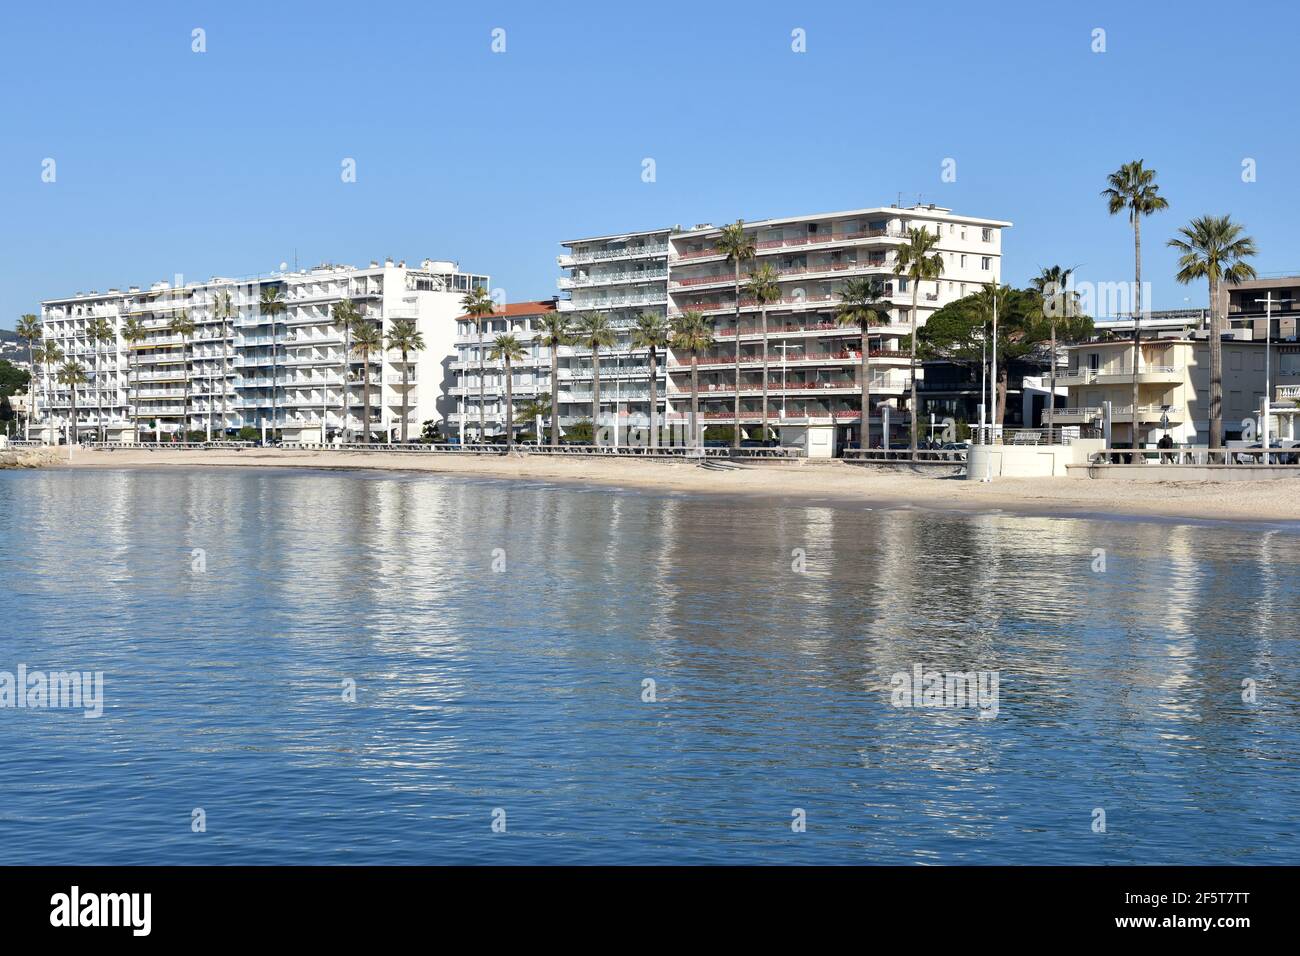 Francia, costa azzurra, Juan les Pins, questa famosa località balneare molto popolare in estate, ha un volto diverso in inverno. Foto Stock